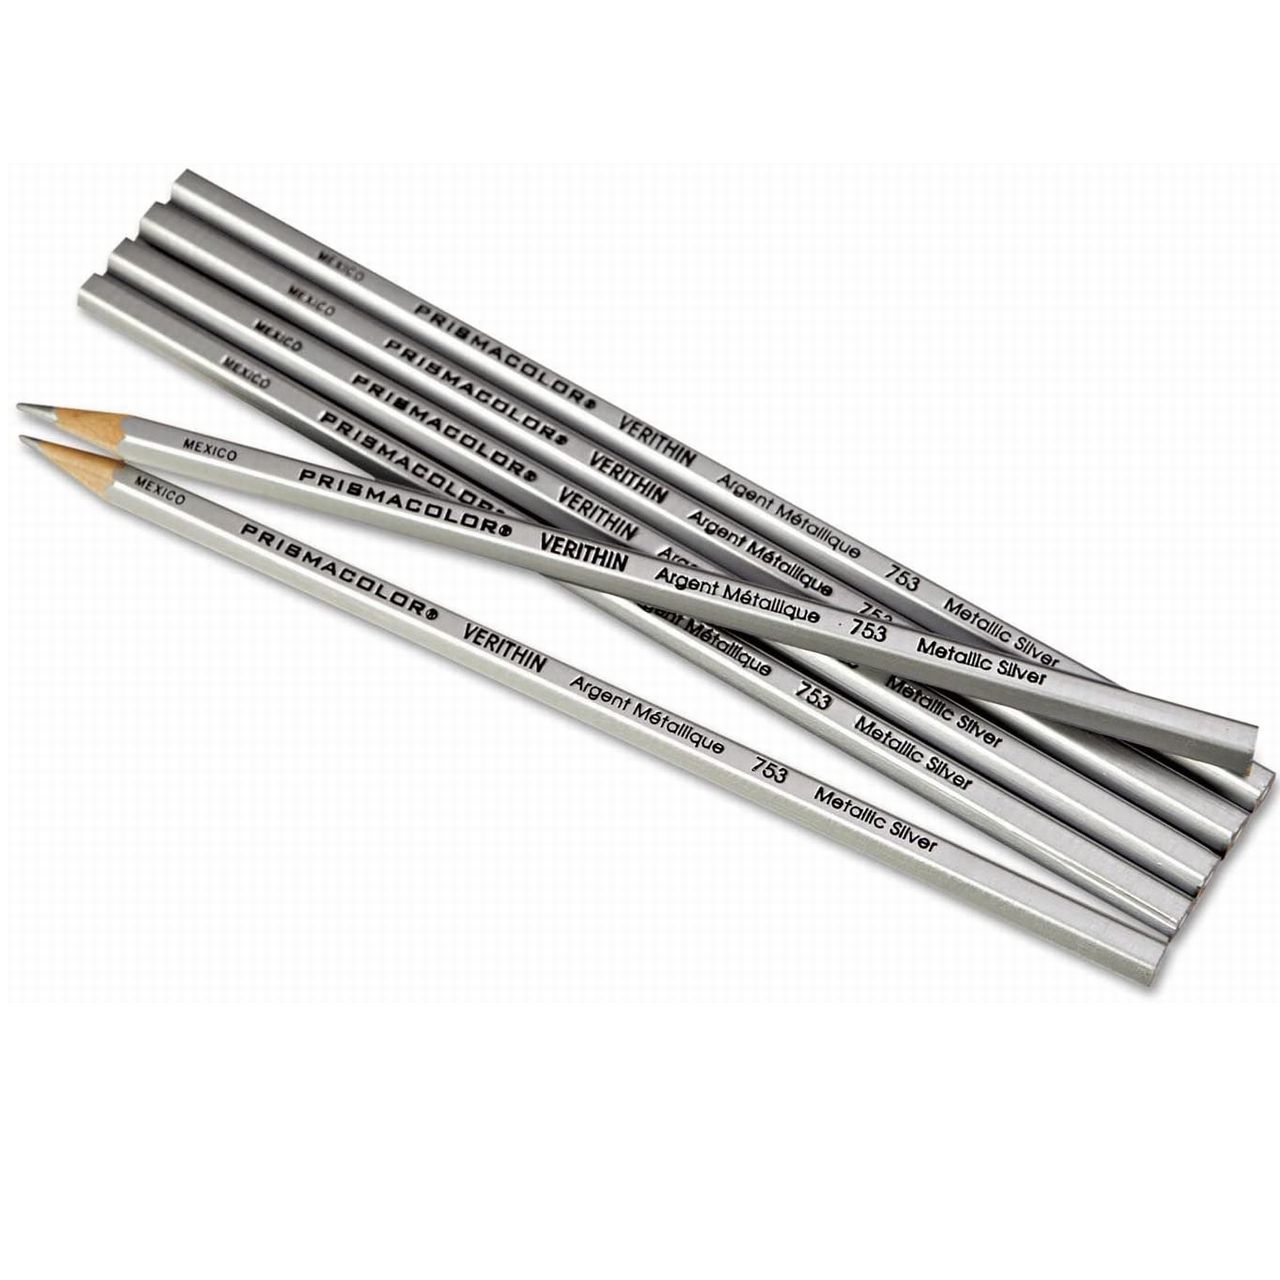 人気ショップが最安値挑戦 送料無料 色鉛筆 最高品質のPrismacolor Premier プリズマカラー色鉛筆 進呈 5%オフクーポン AL完売しました。 SANFORD サンフォード プリズマカラー シルバーメタリック Metallic Pencils ステイホーム 福袋 最高品質の色鉛筆 Verithin Prismacolor Silver クリスマス Colored